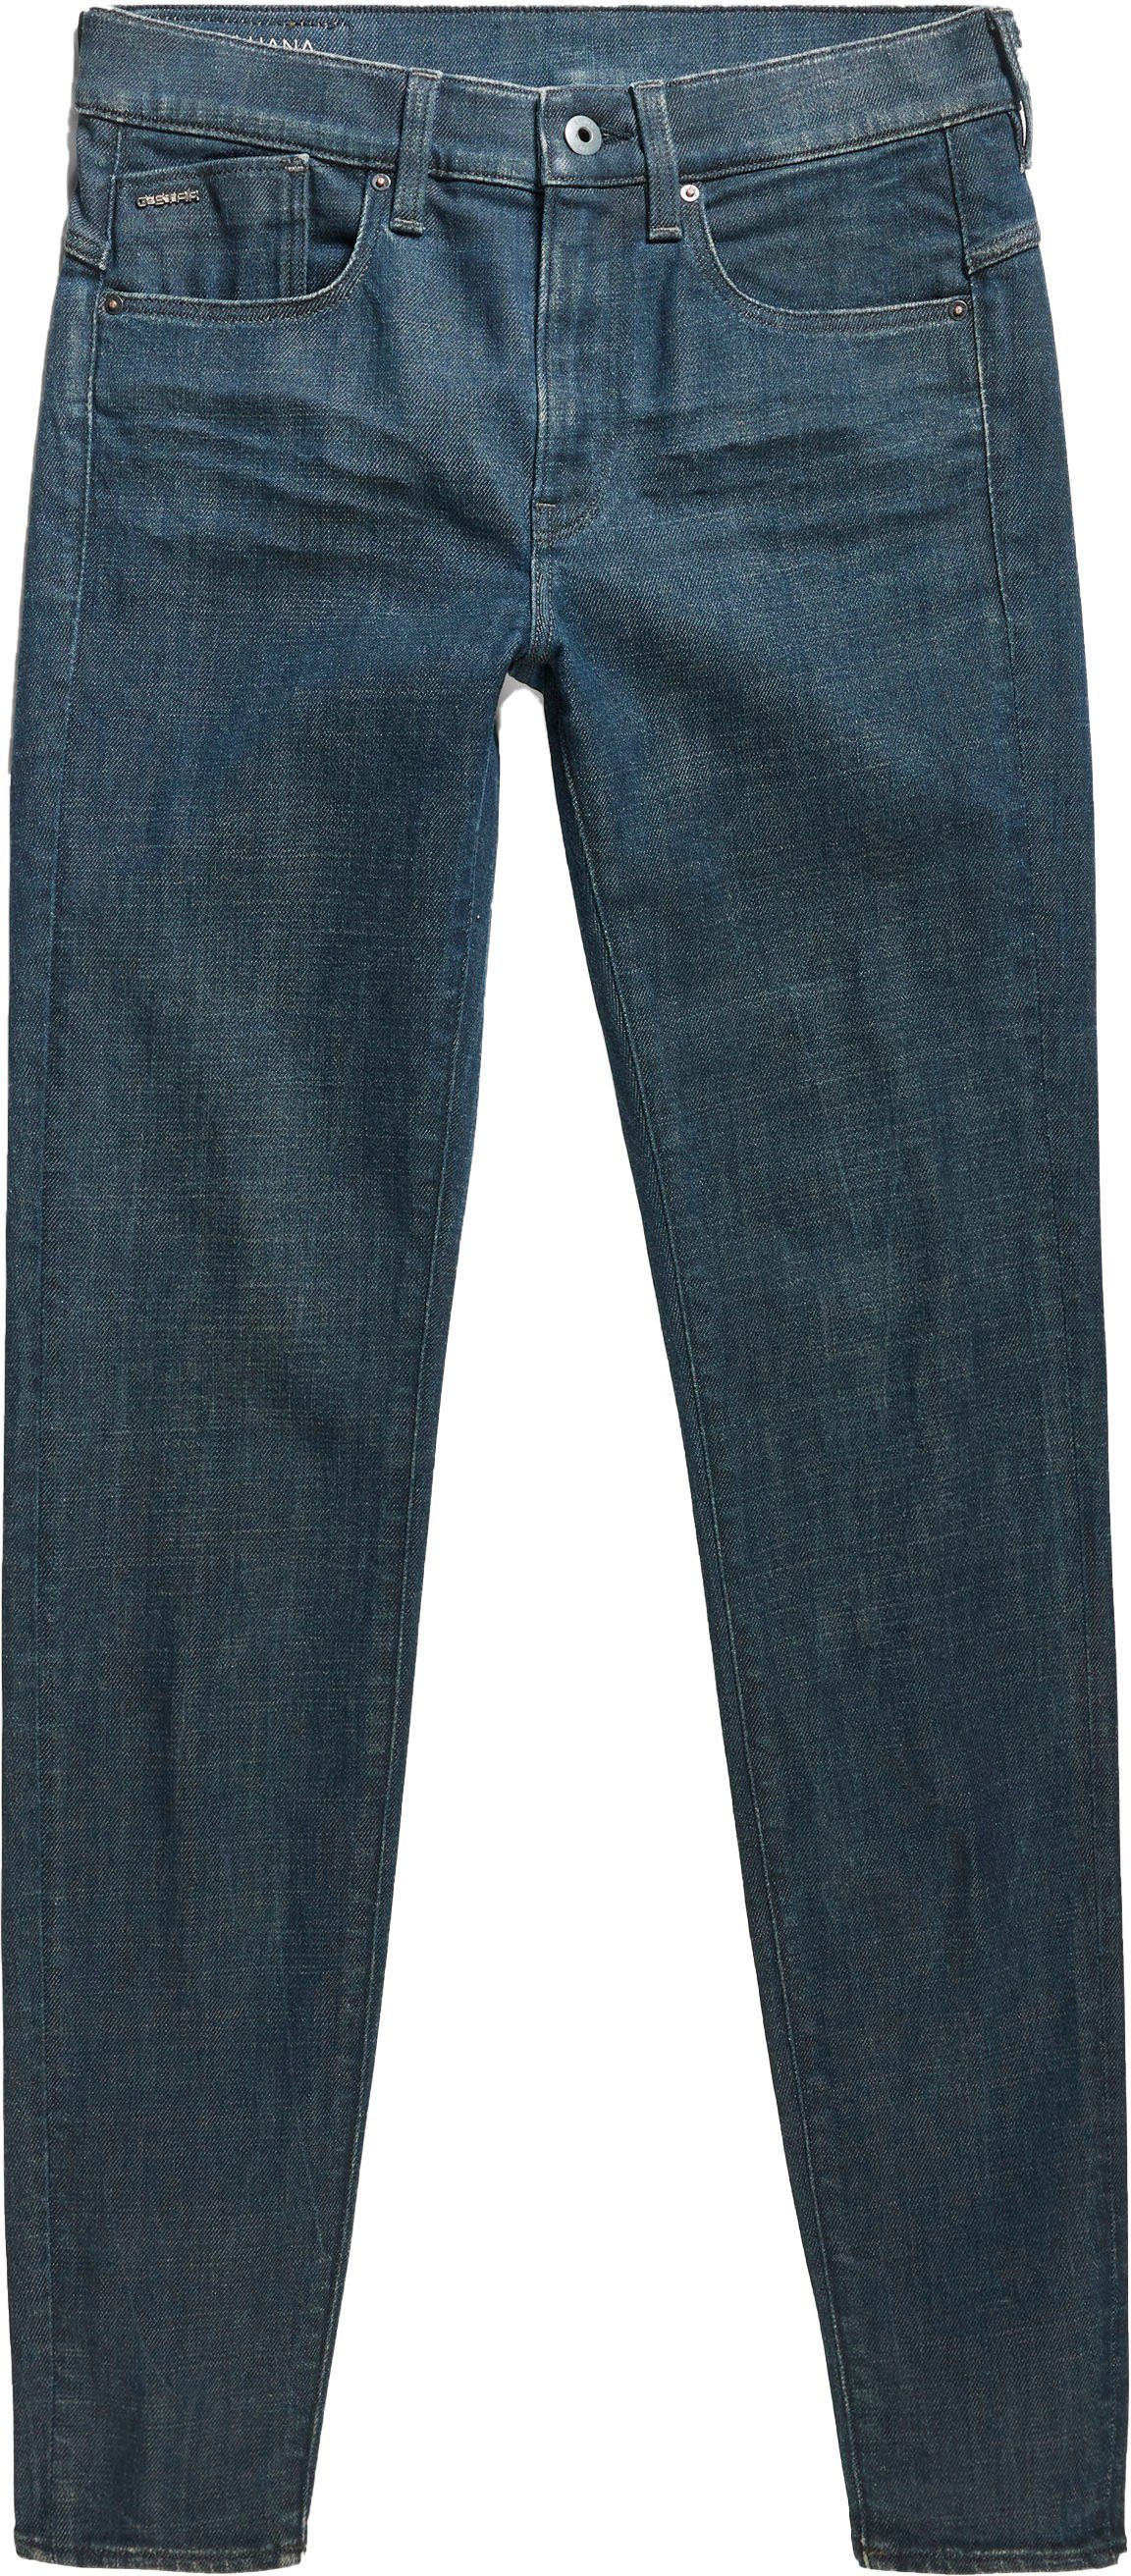 Stretchanteil worn mit in Skinny-fit-Jeans Wohlfühlfaktor G-Star tornado RAW durch